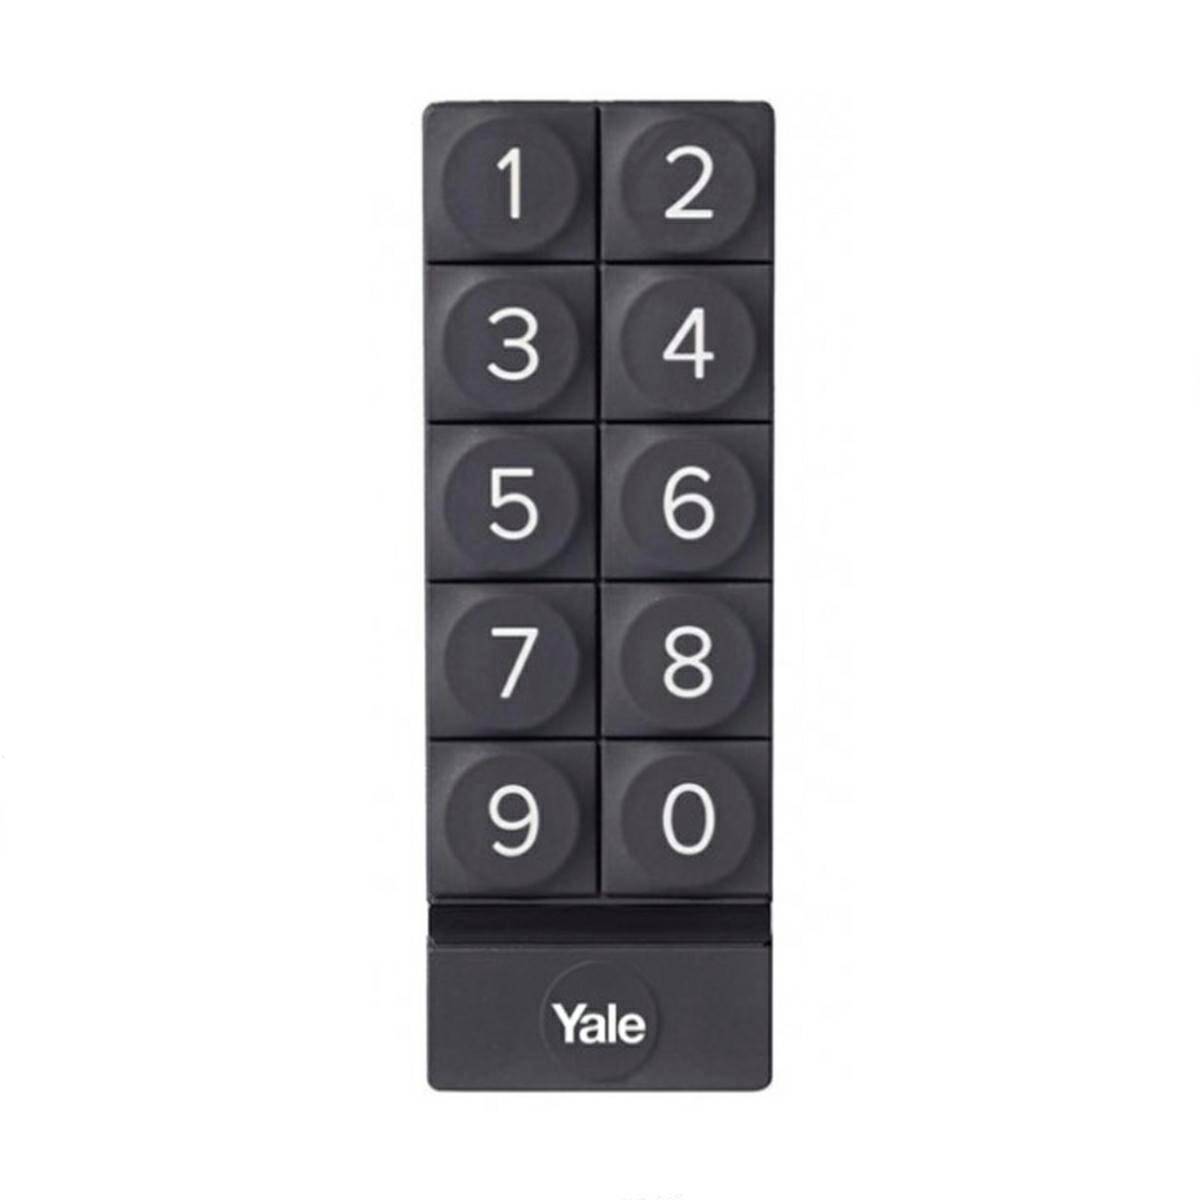 Keypad Yale Smart KEYPAD